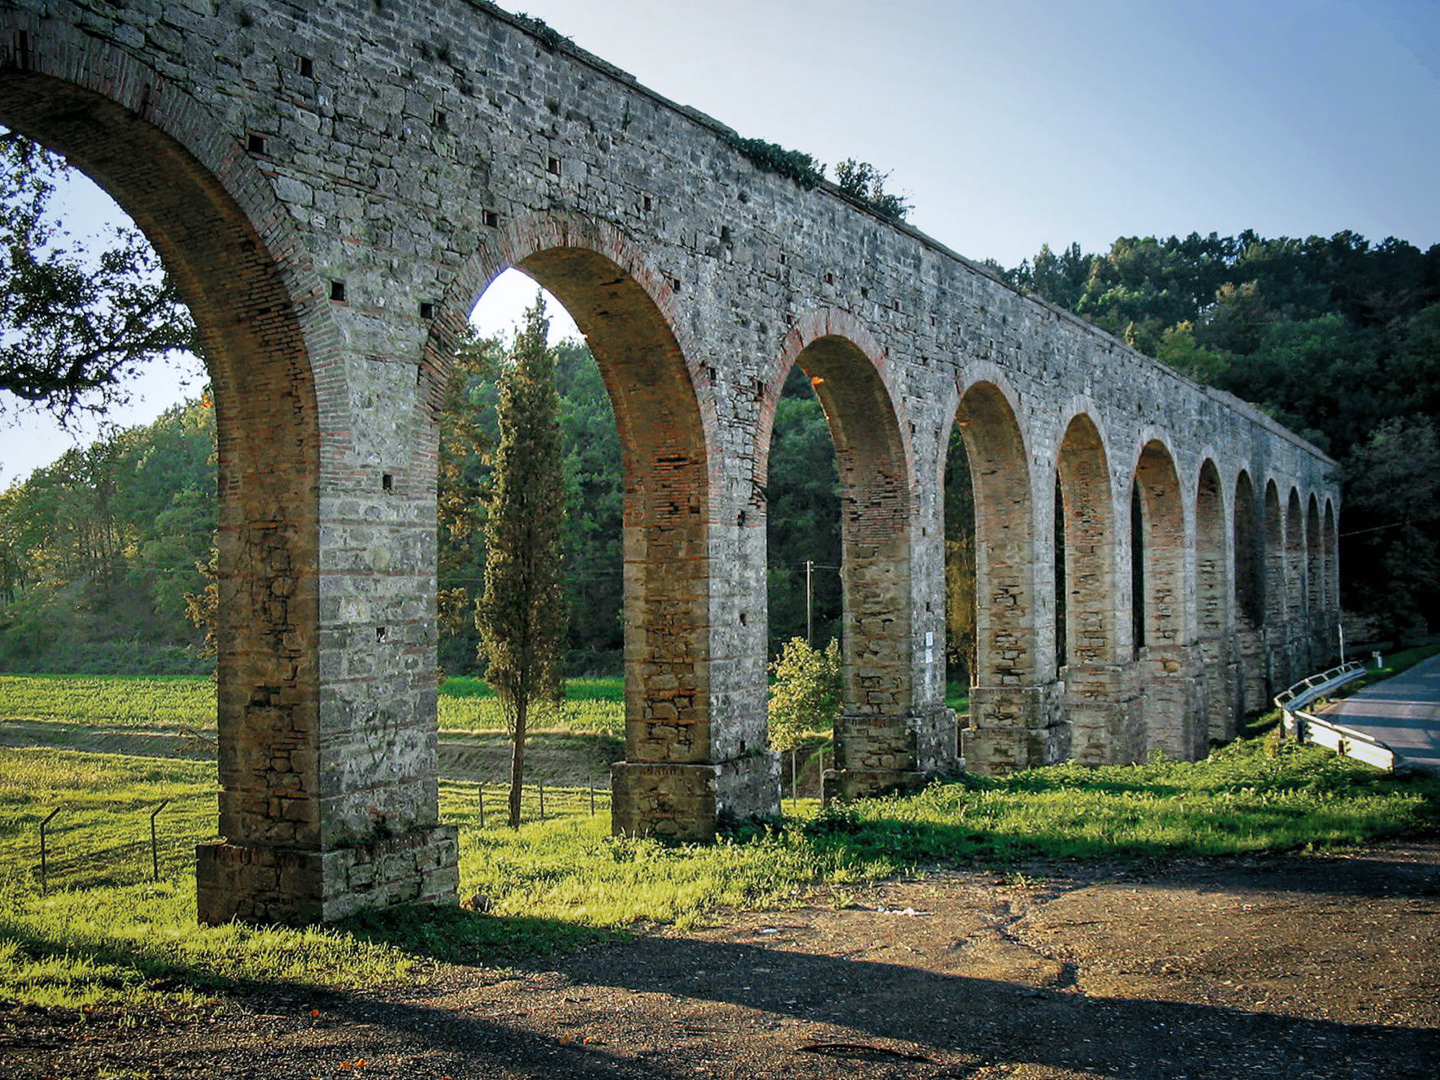 The Leopoldine Aqueduct